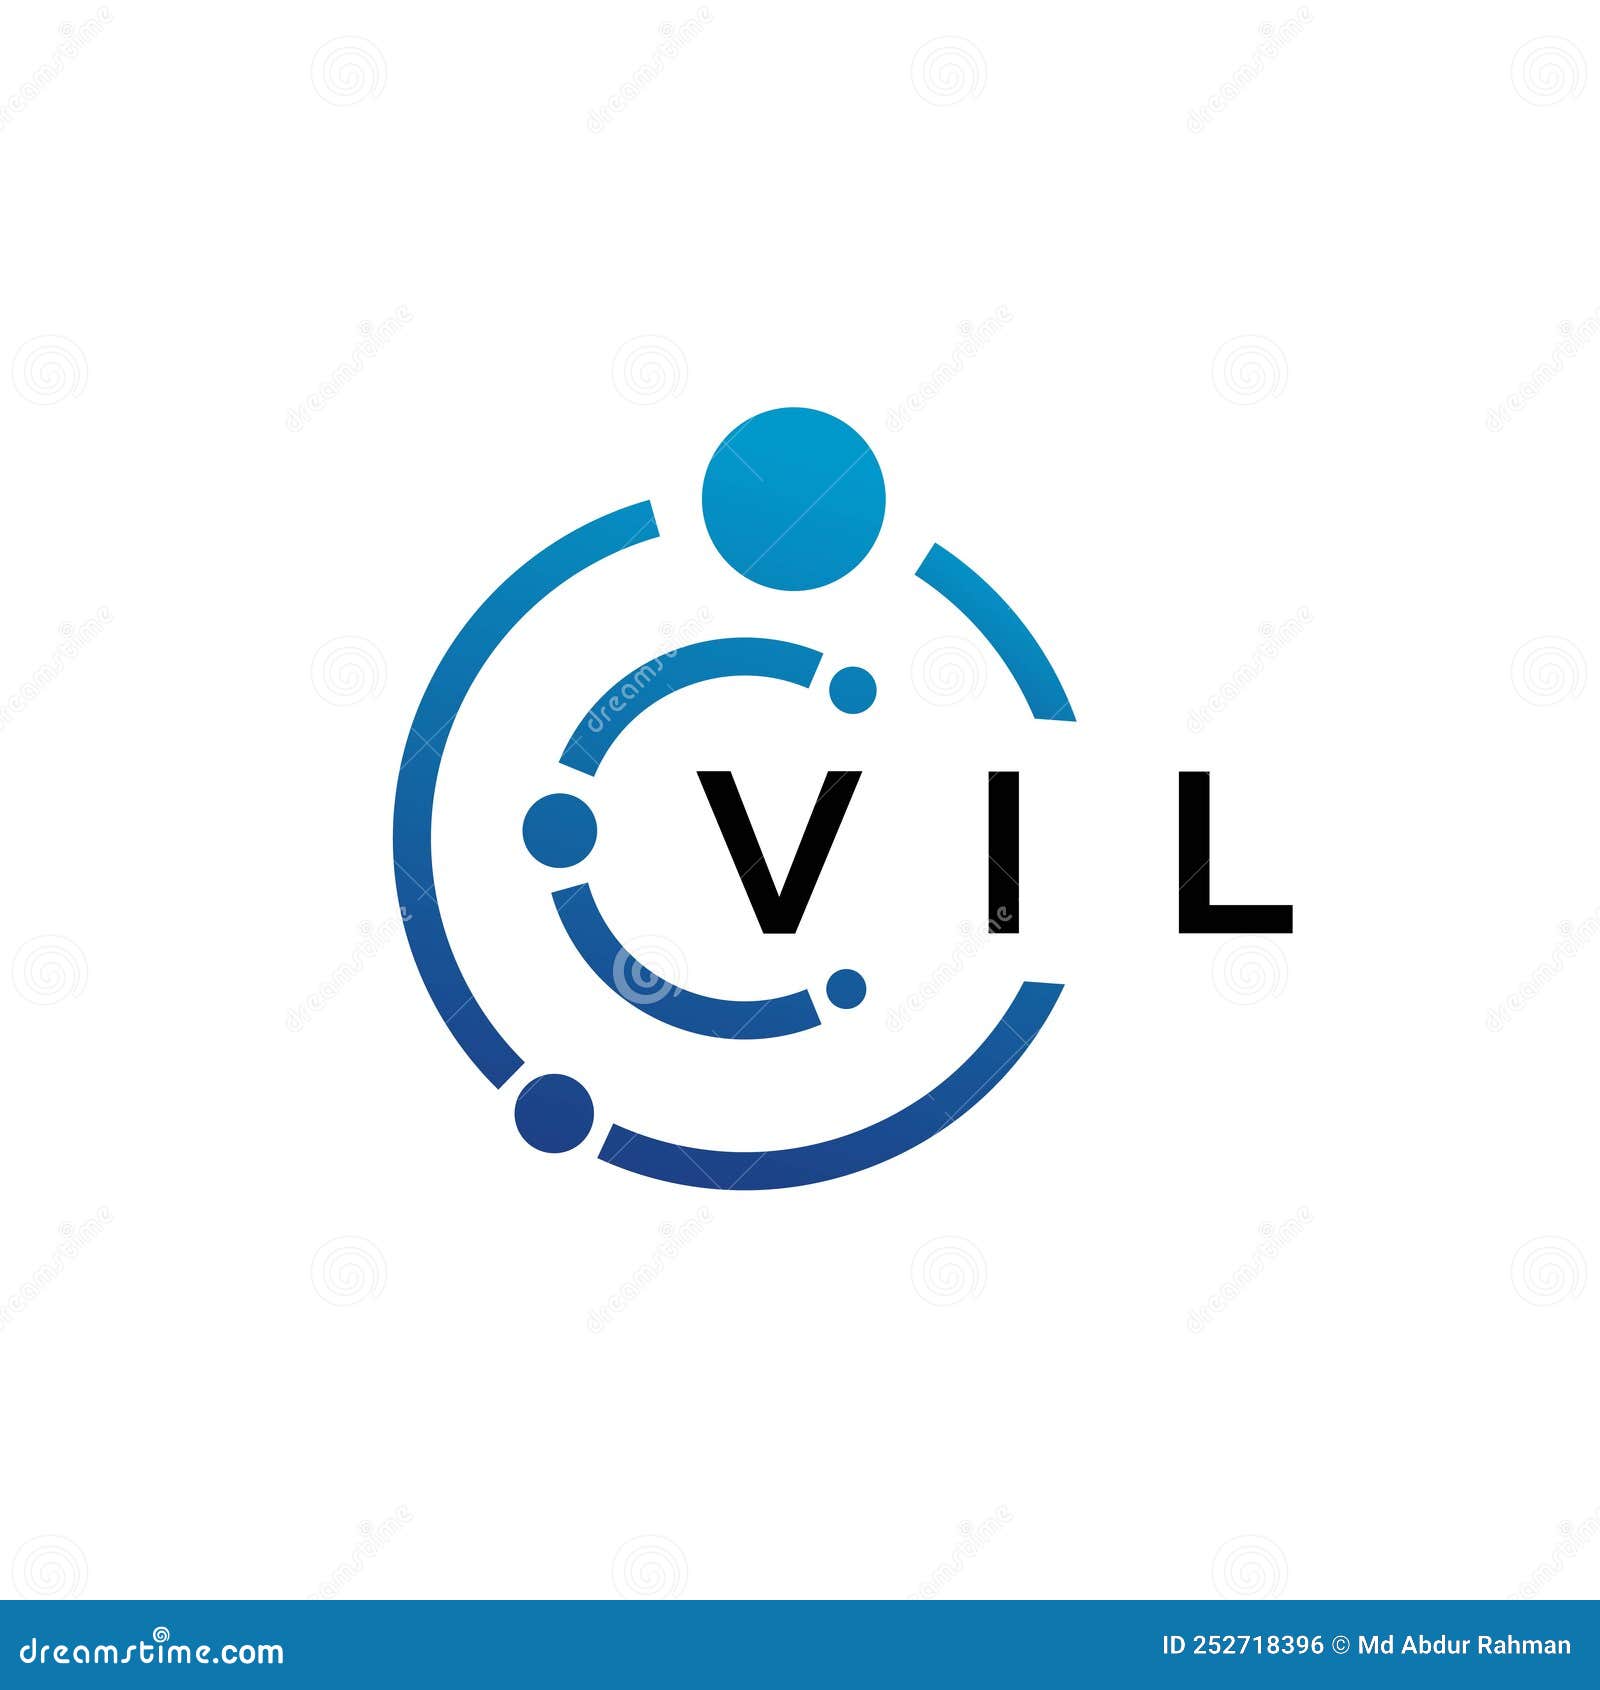 vil letter technology logo  on white background. vil creative initials letter it logo concept. vil letter 